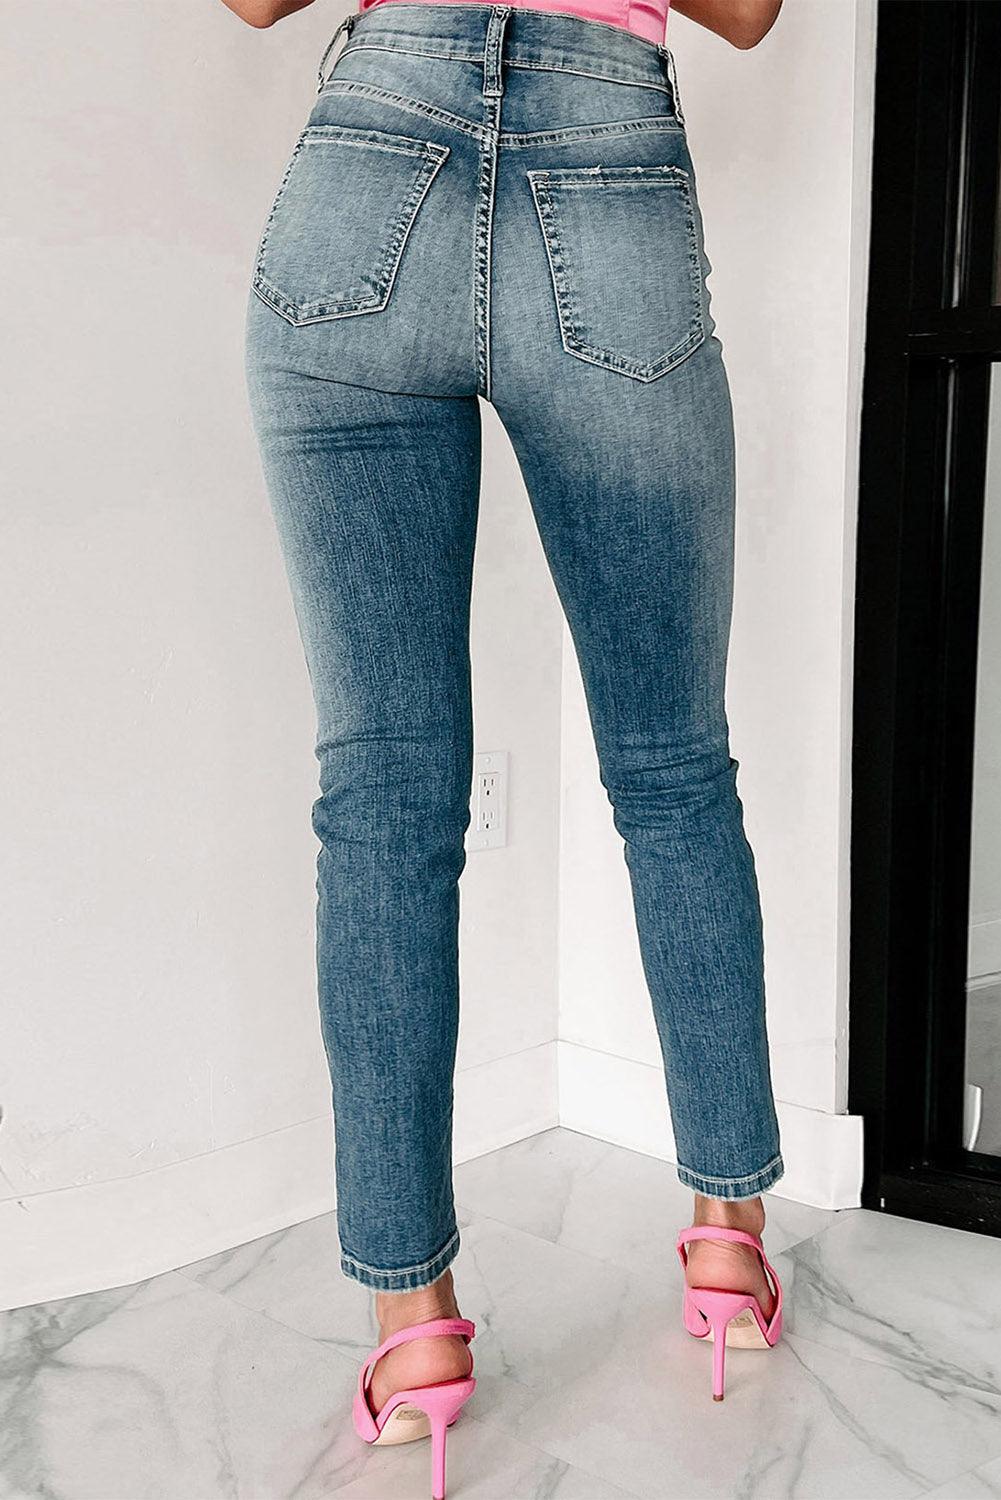 Blue Distressed Ripped Skinny Jeans - L & M Kee, LLC